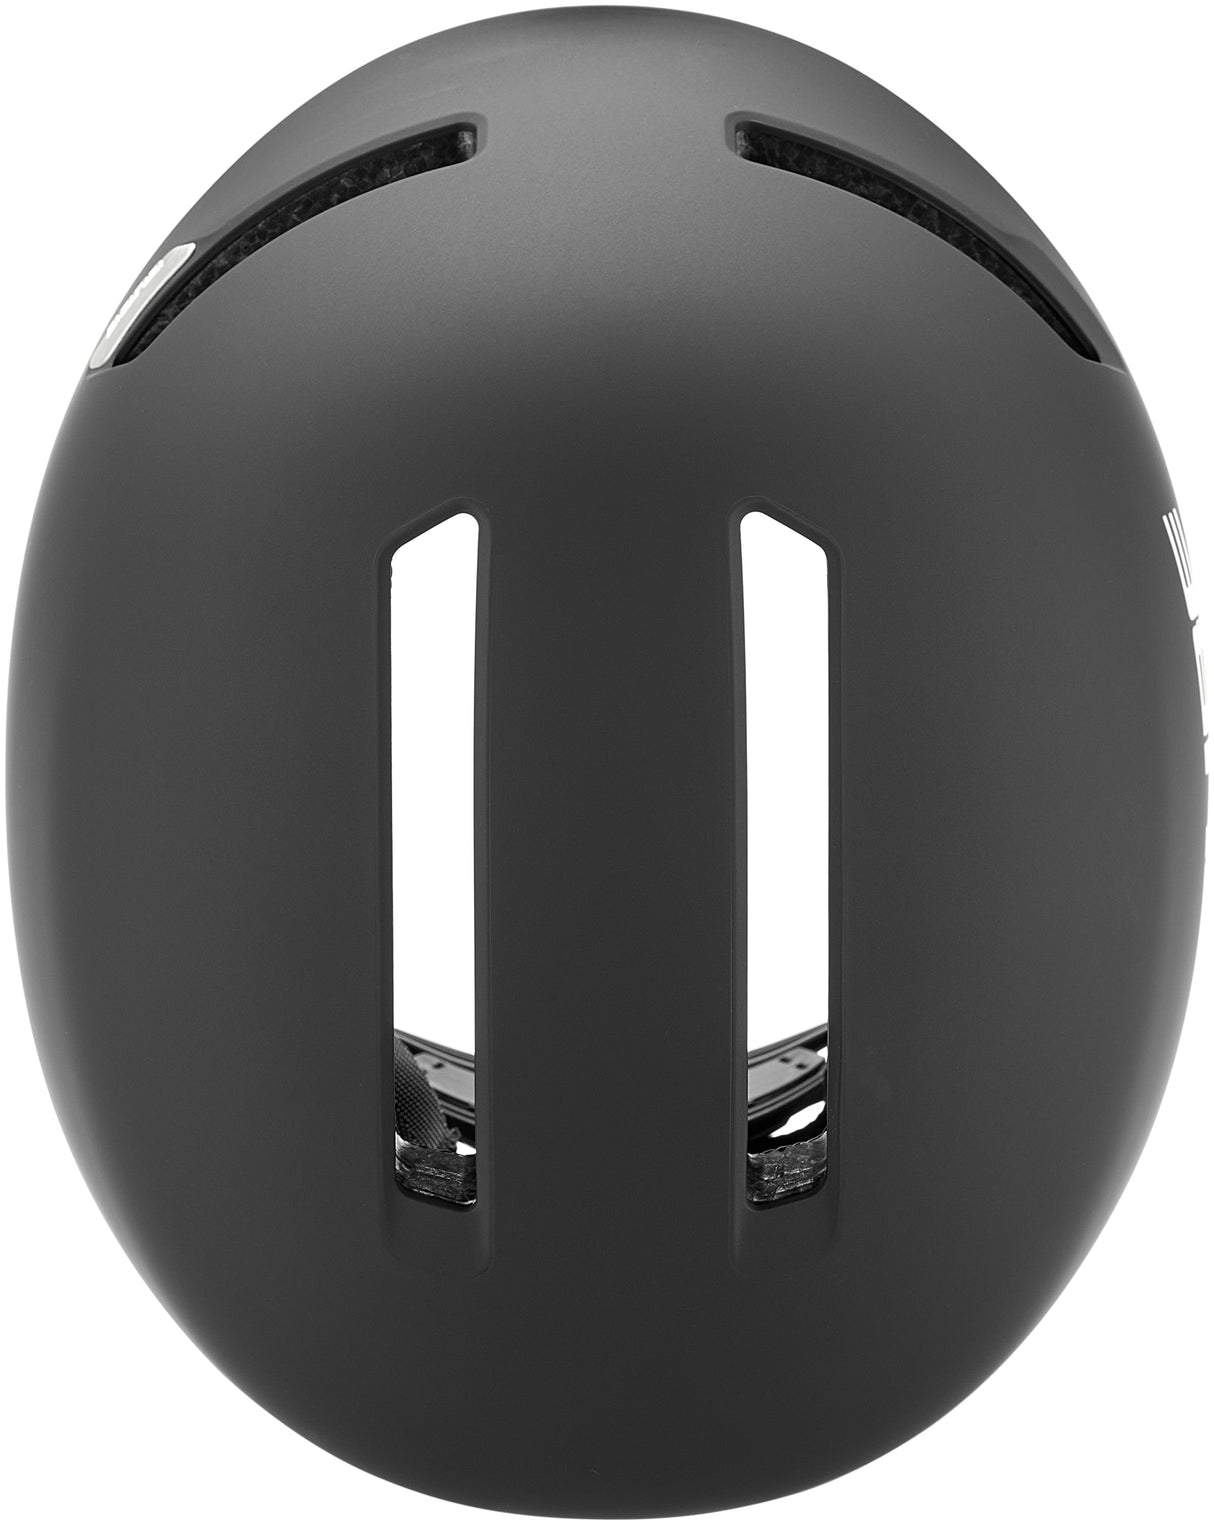 CUBE helm DIRT 2.0 zwart